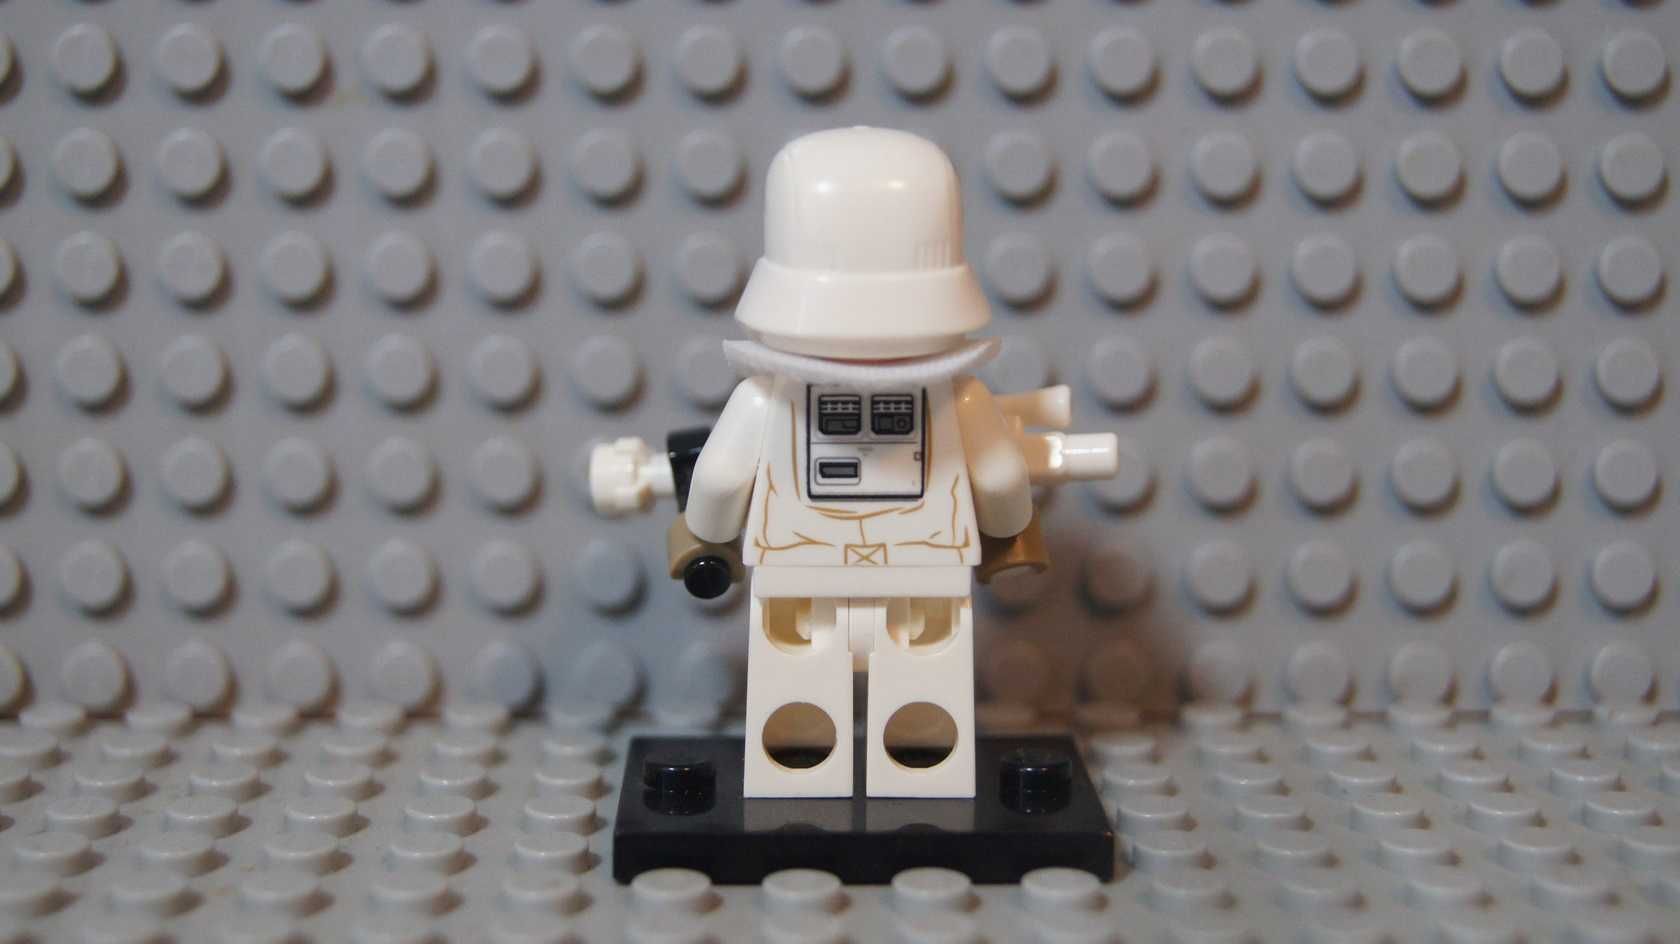 Lego Star Wars figurka Solo sw0950 Range Trooper 75217 NOWY